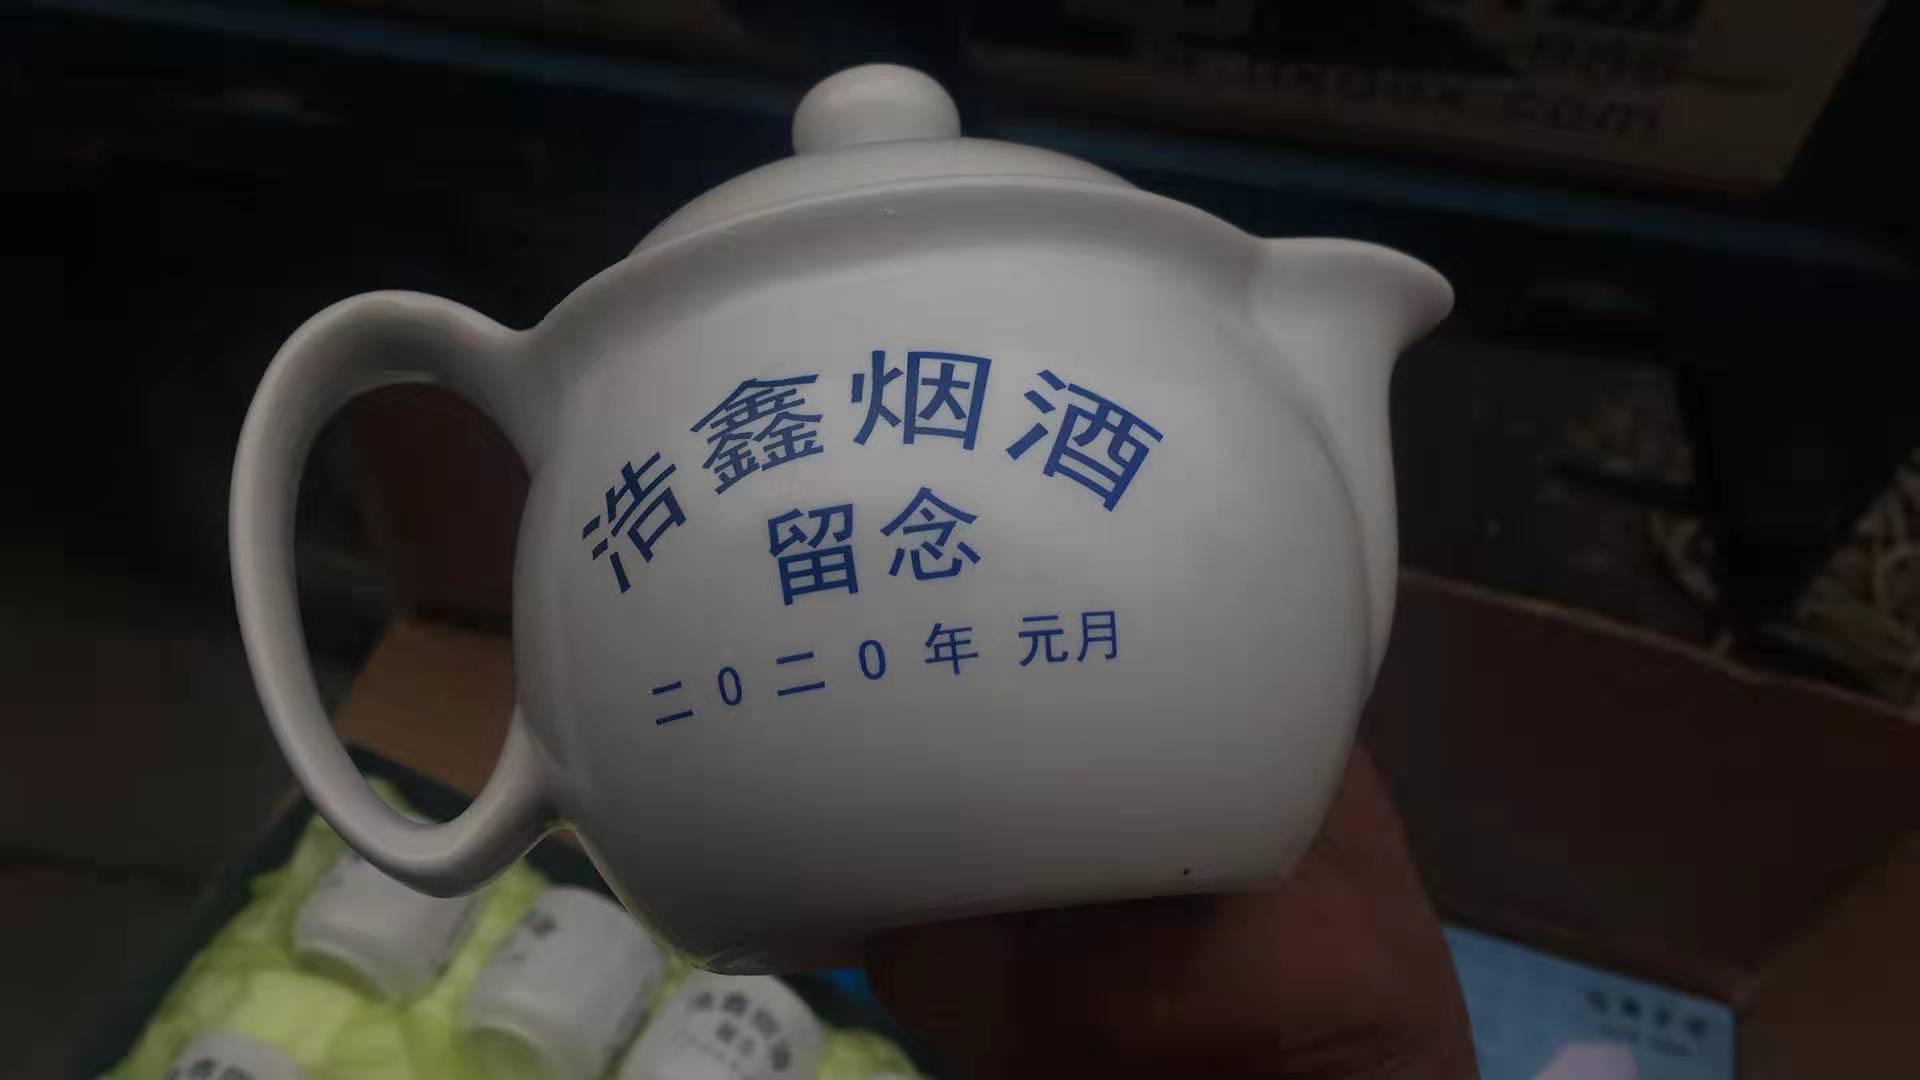 日用陶瓷茶具厂 套装窑变雕刻茶杯 7头青花瓷家用过滤茶具茶杯 陶瓷套装定制logo